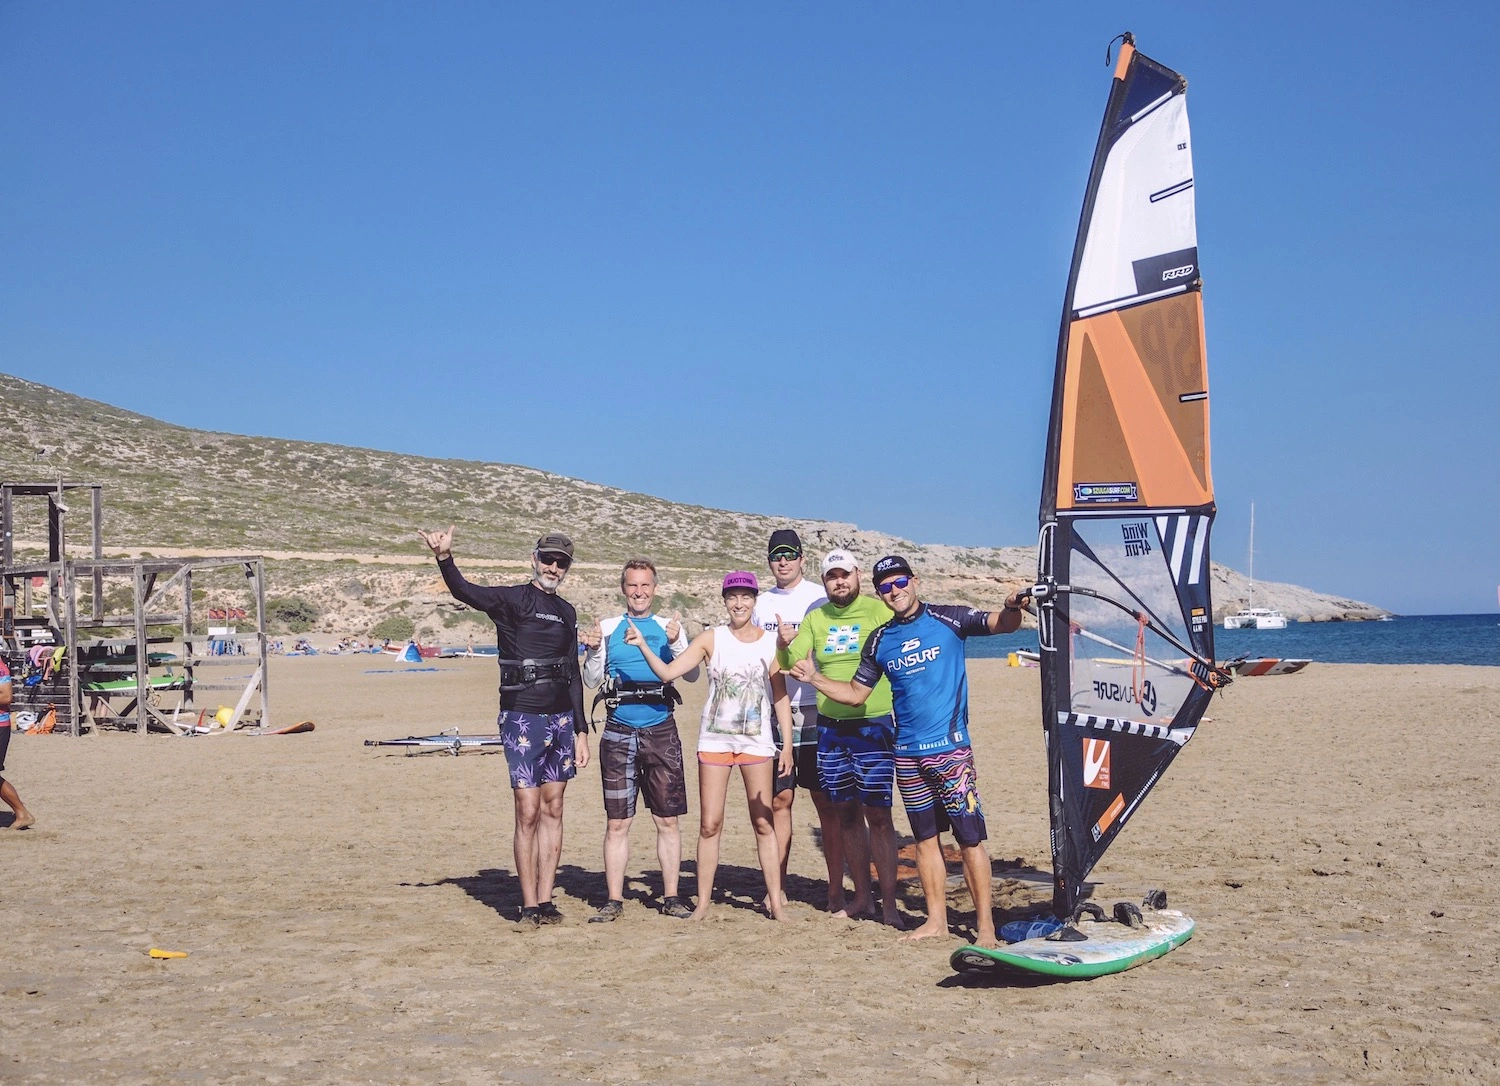 Wyjazdy-szkoleniowe-na-windsurfing-z-FunSurf-Rodos-Prasonisi-_57_